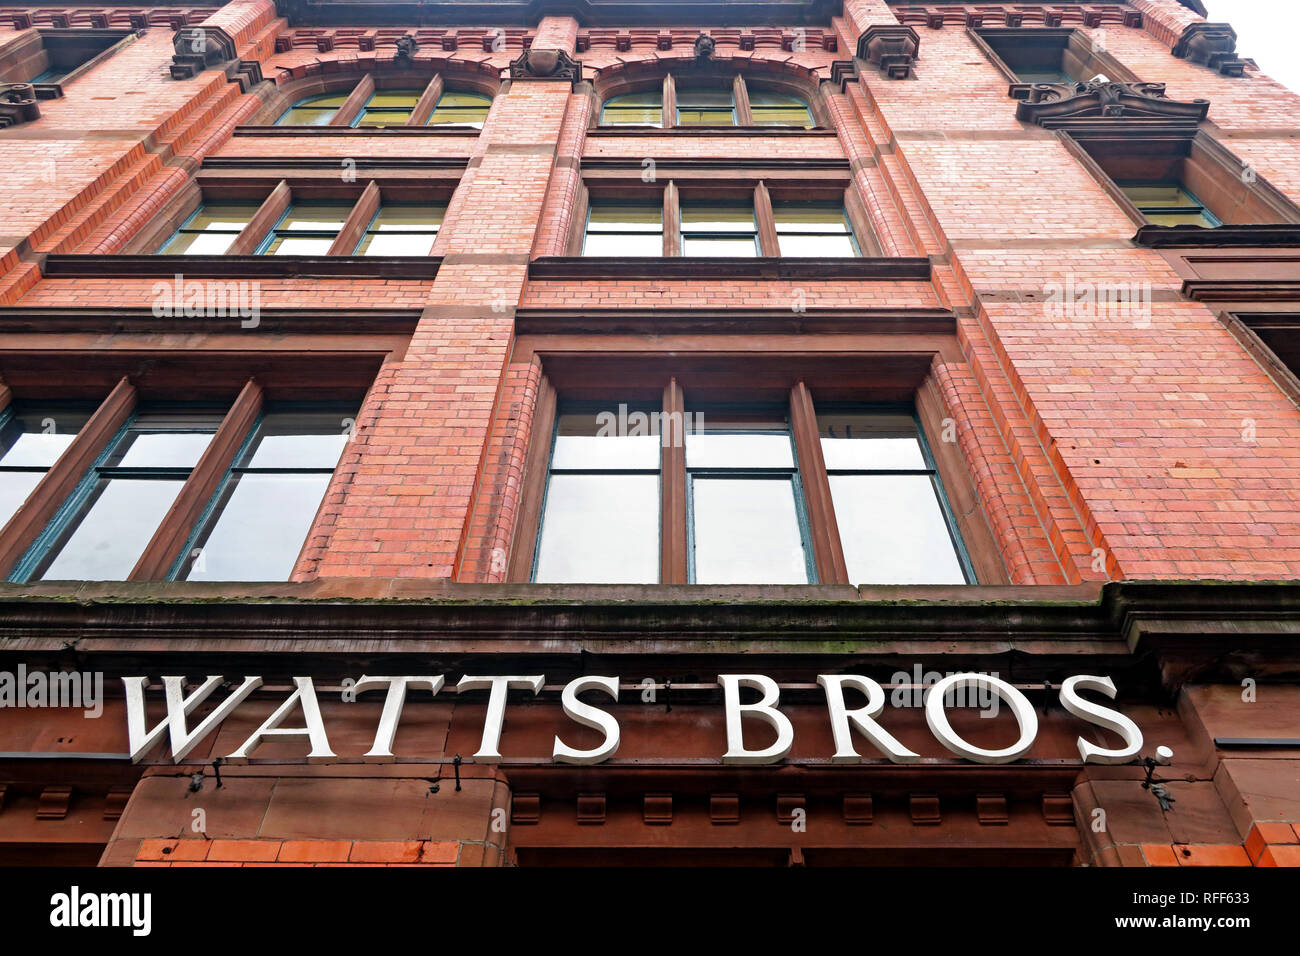 Watts Brothers bâtiment, quincaillerie et entrepôt de meubles, maintenant bureaux à Bunsen St, Manchester, Angleterre, Royaume-Uni, M1 1DW Banque D'Images